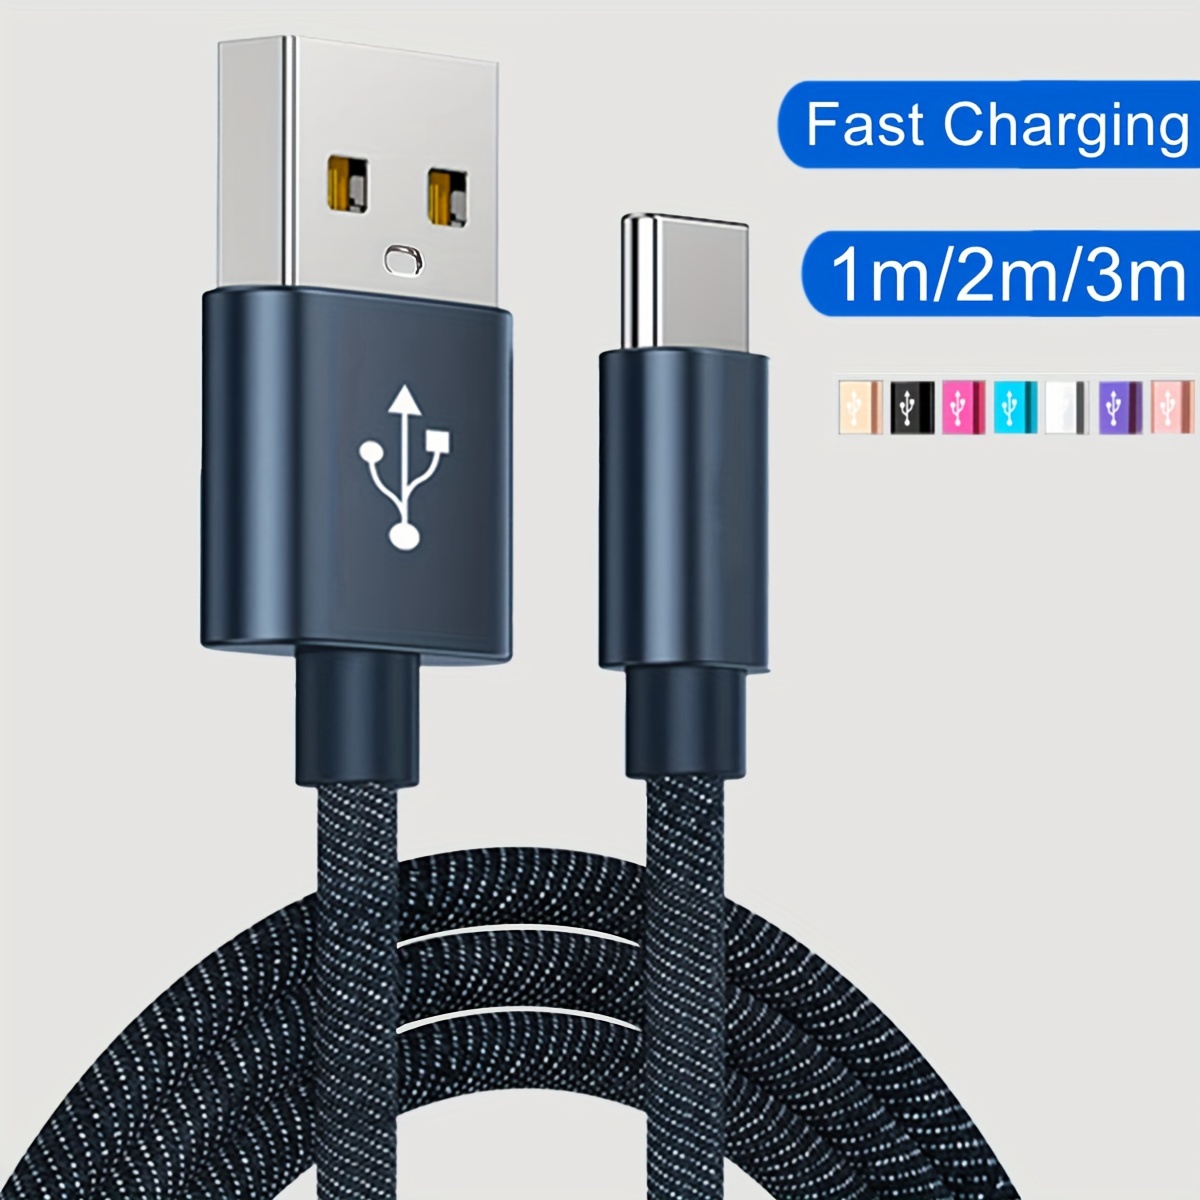 20W Chargeur USB C Rapide, YHEMI Chargeur Rapide USB A & USB C 2